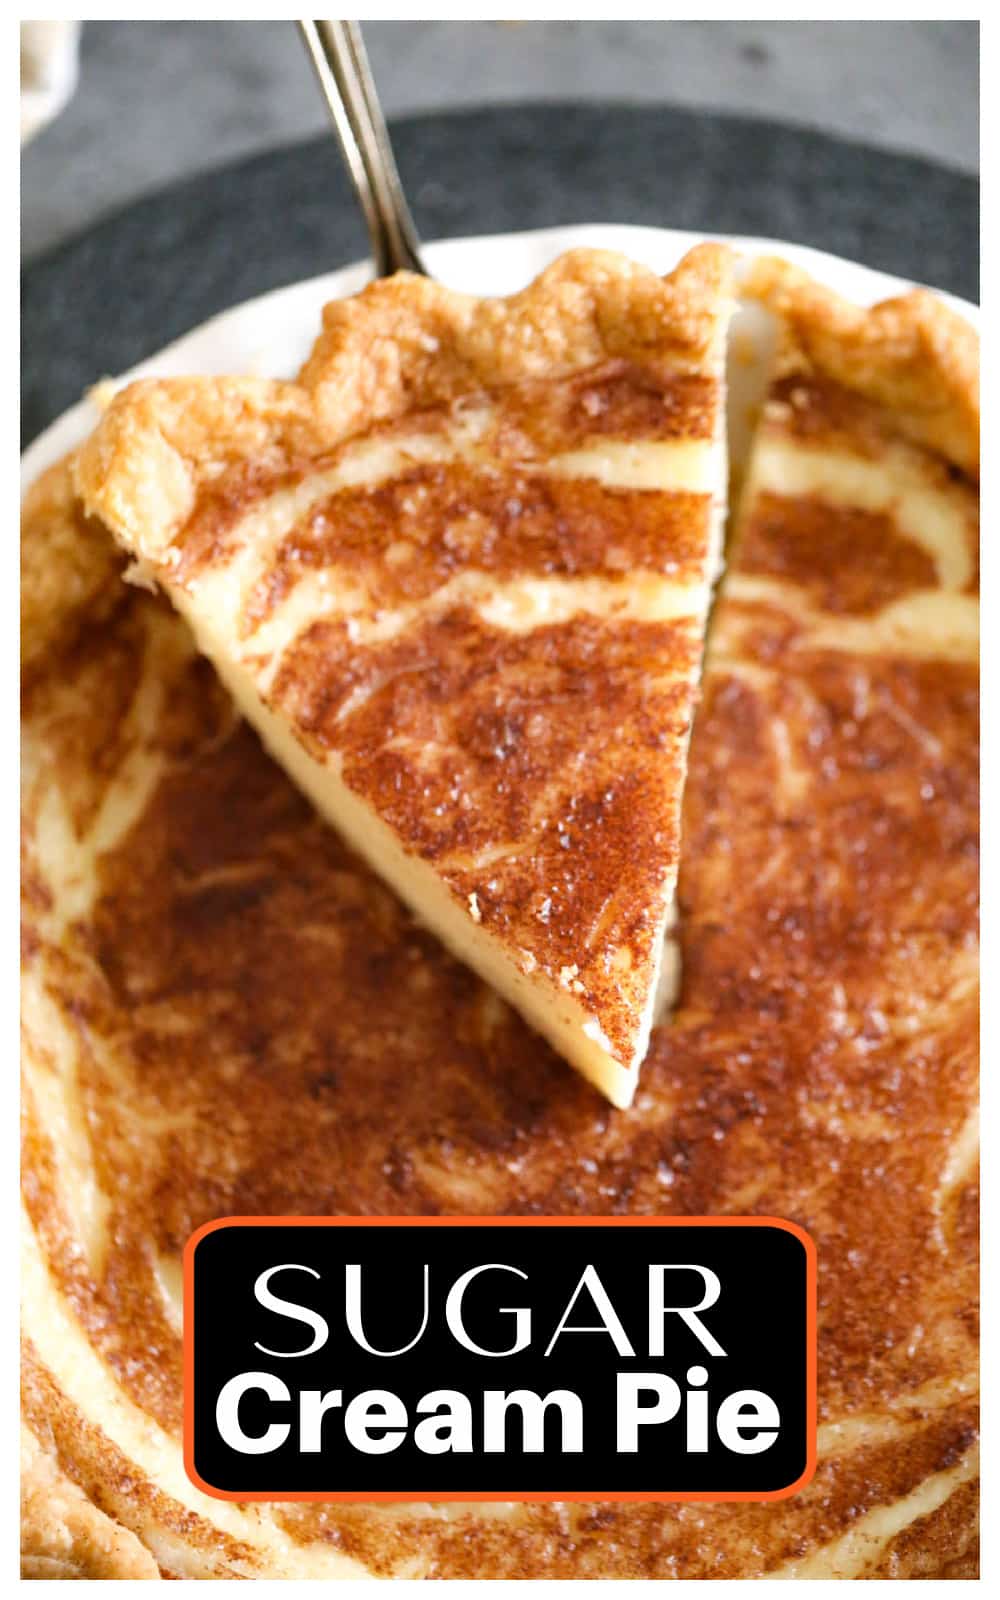 Sugar Cream Pie recipe